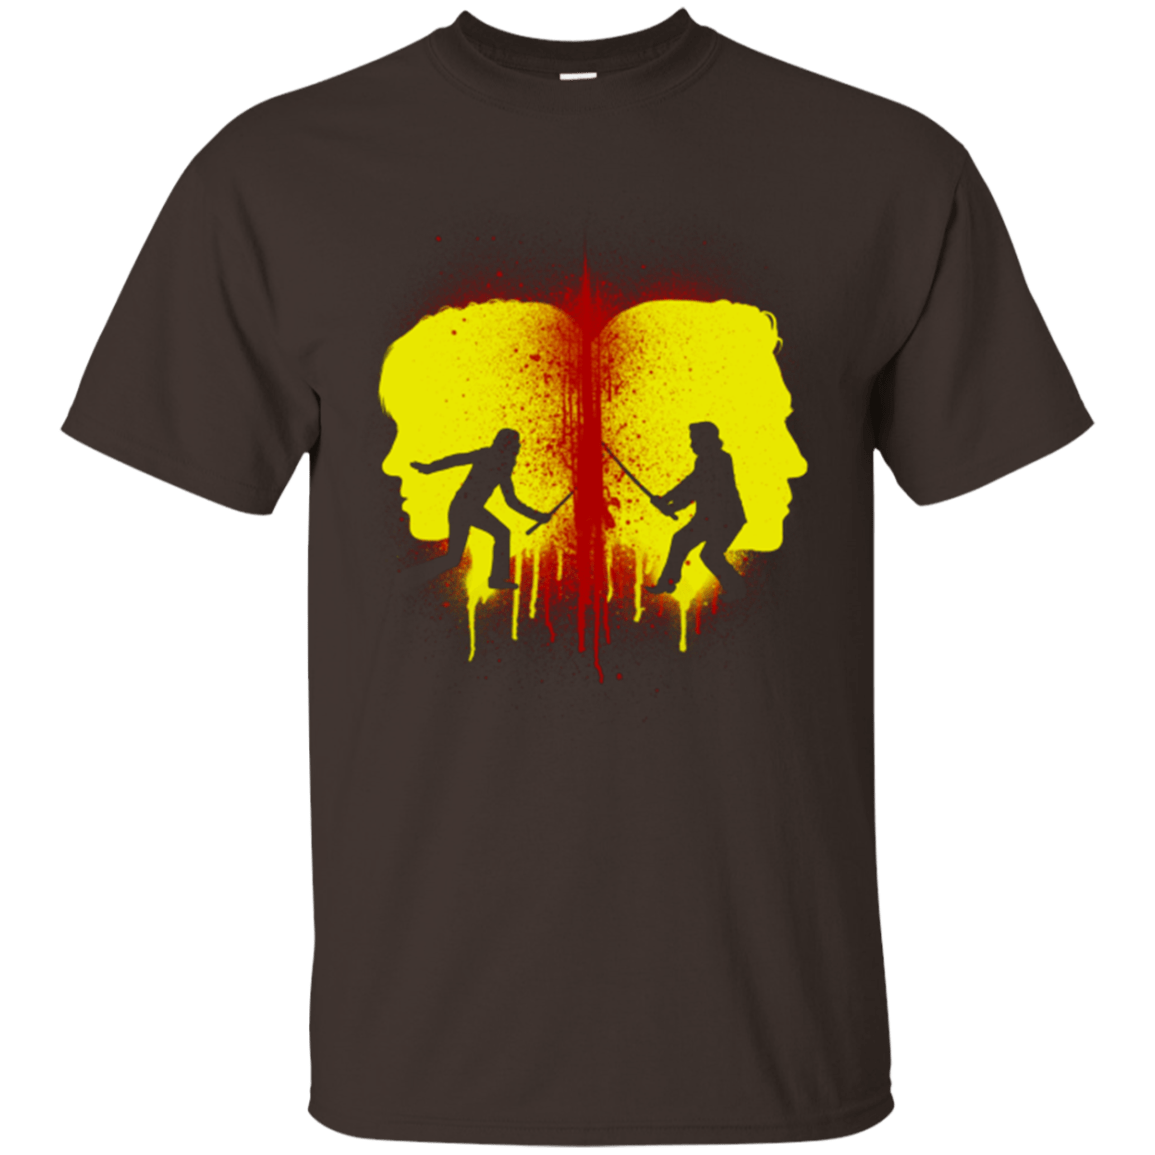 T-Shirts Dark Chocolate / Small Kill Bill Silhouettes T-Shirt